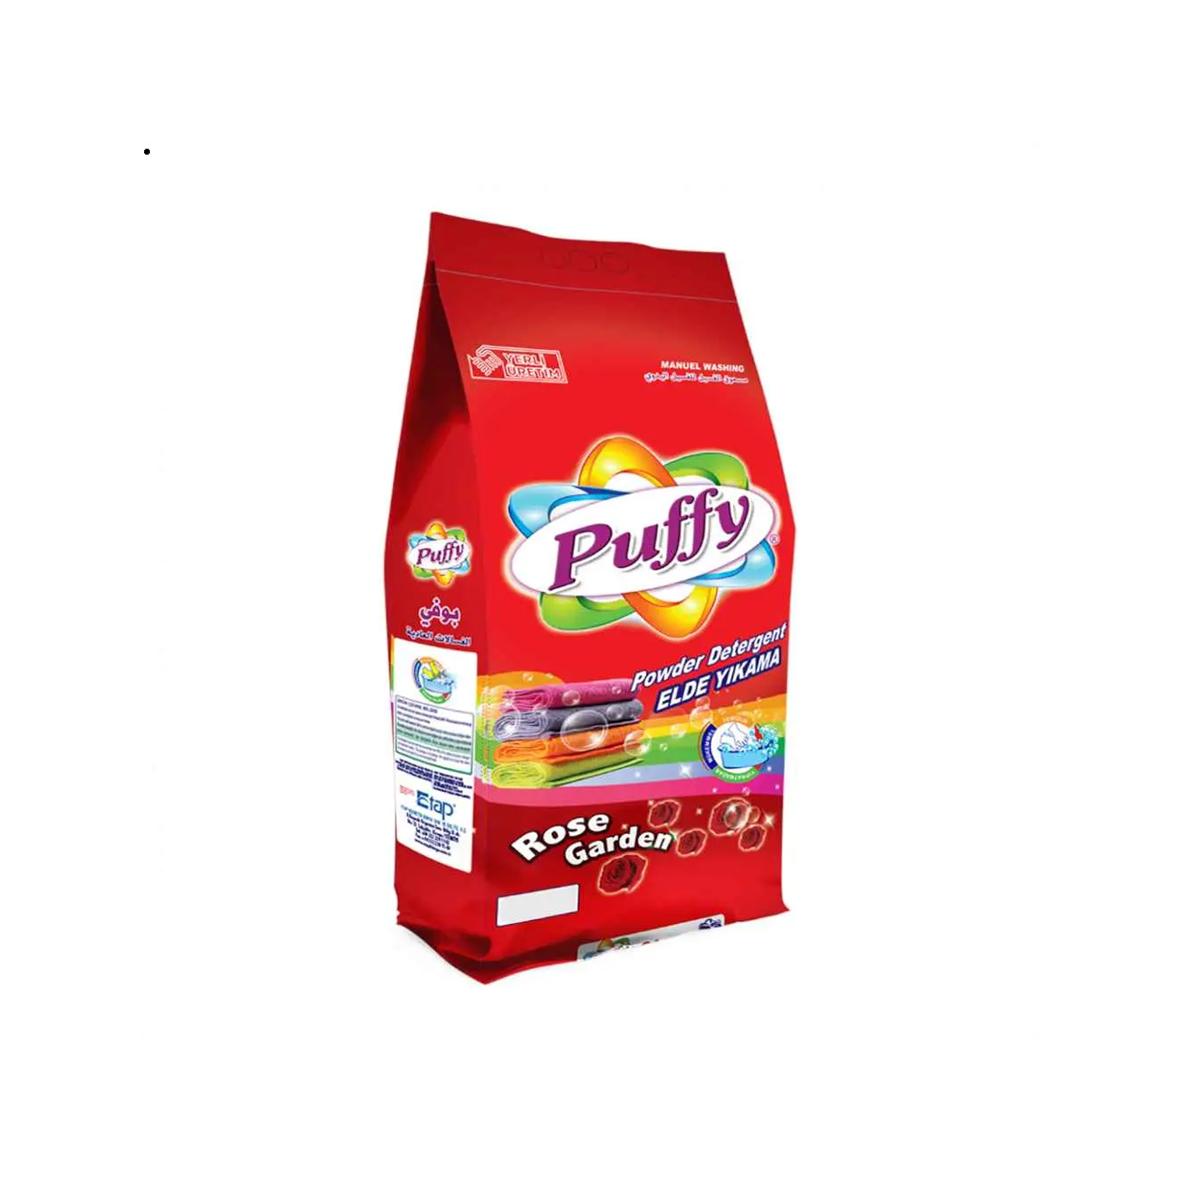 Detergente en polvo para ropa de color con aroma a rosas Puffy (5 kg / 11.02 lb)